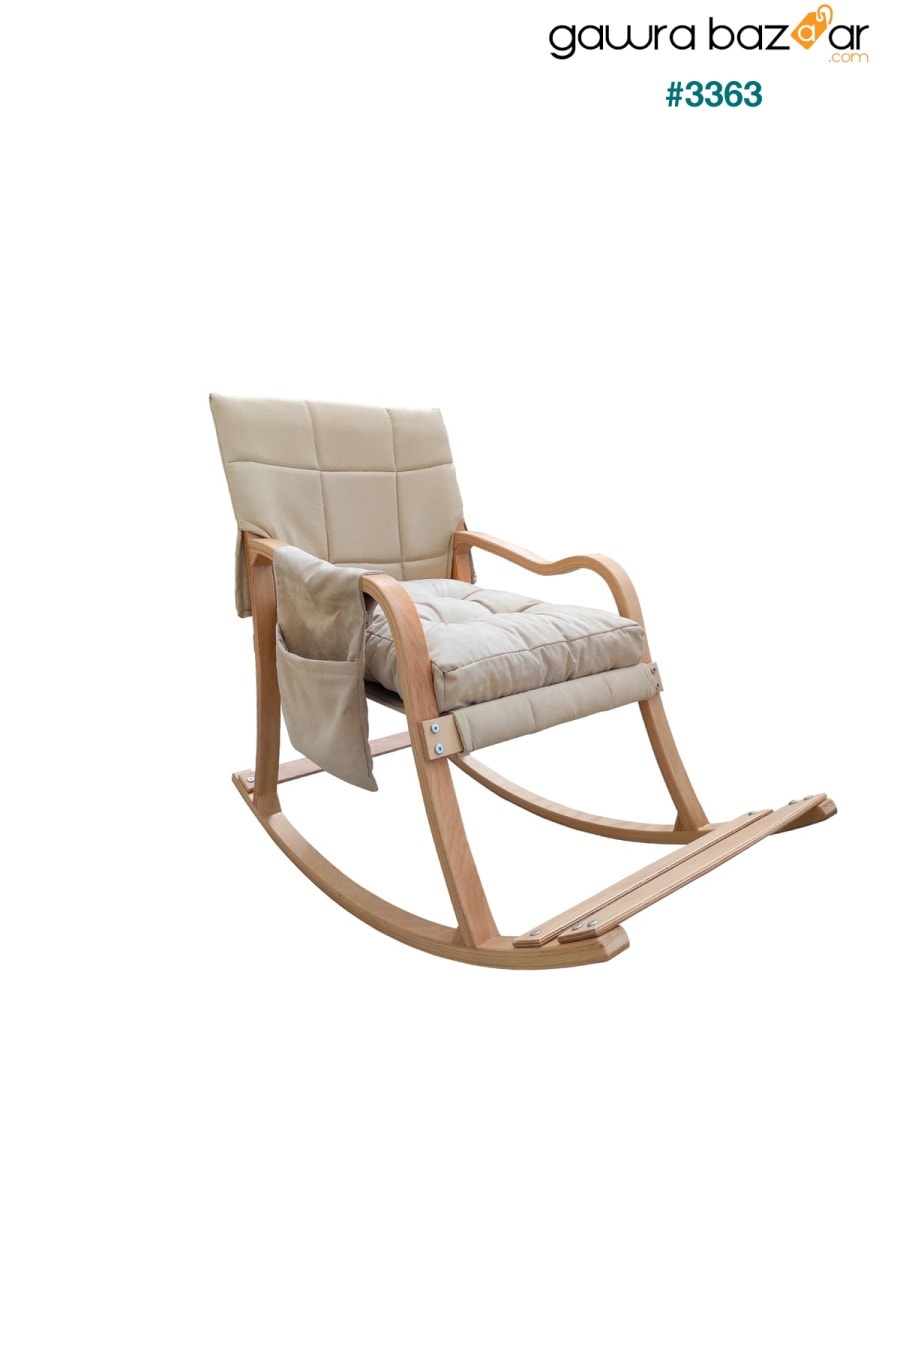 كرسي هزاز Paşa الخشبي الطويل وكرسي الراحة الطبيعي كريم Mobildeco 0